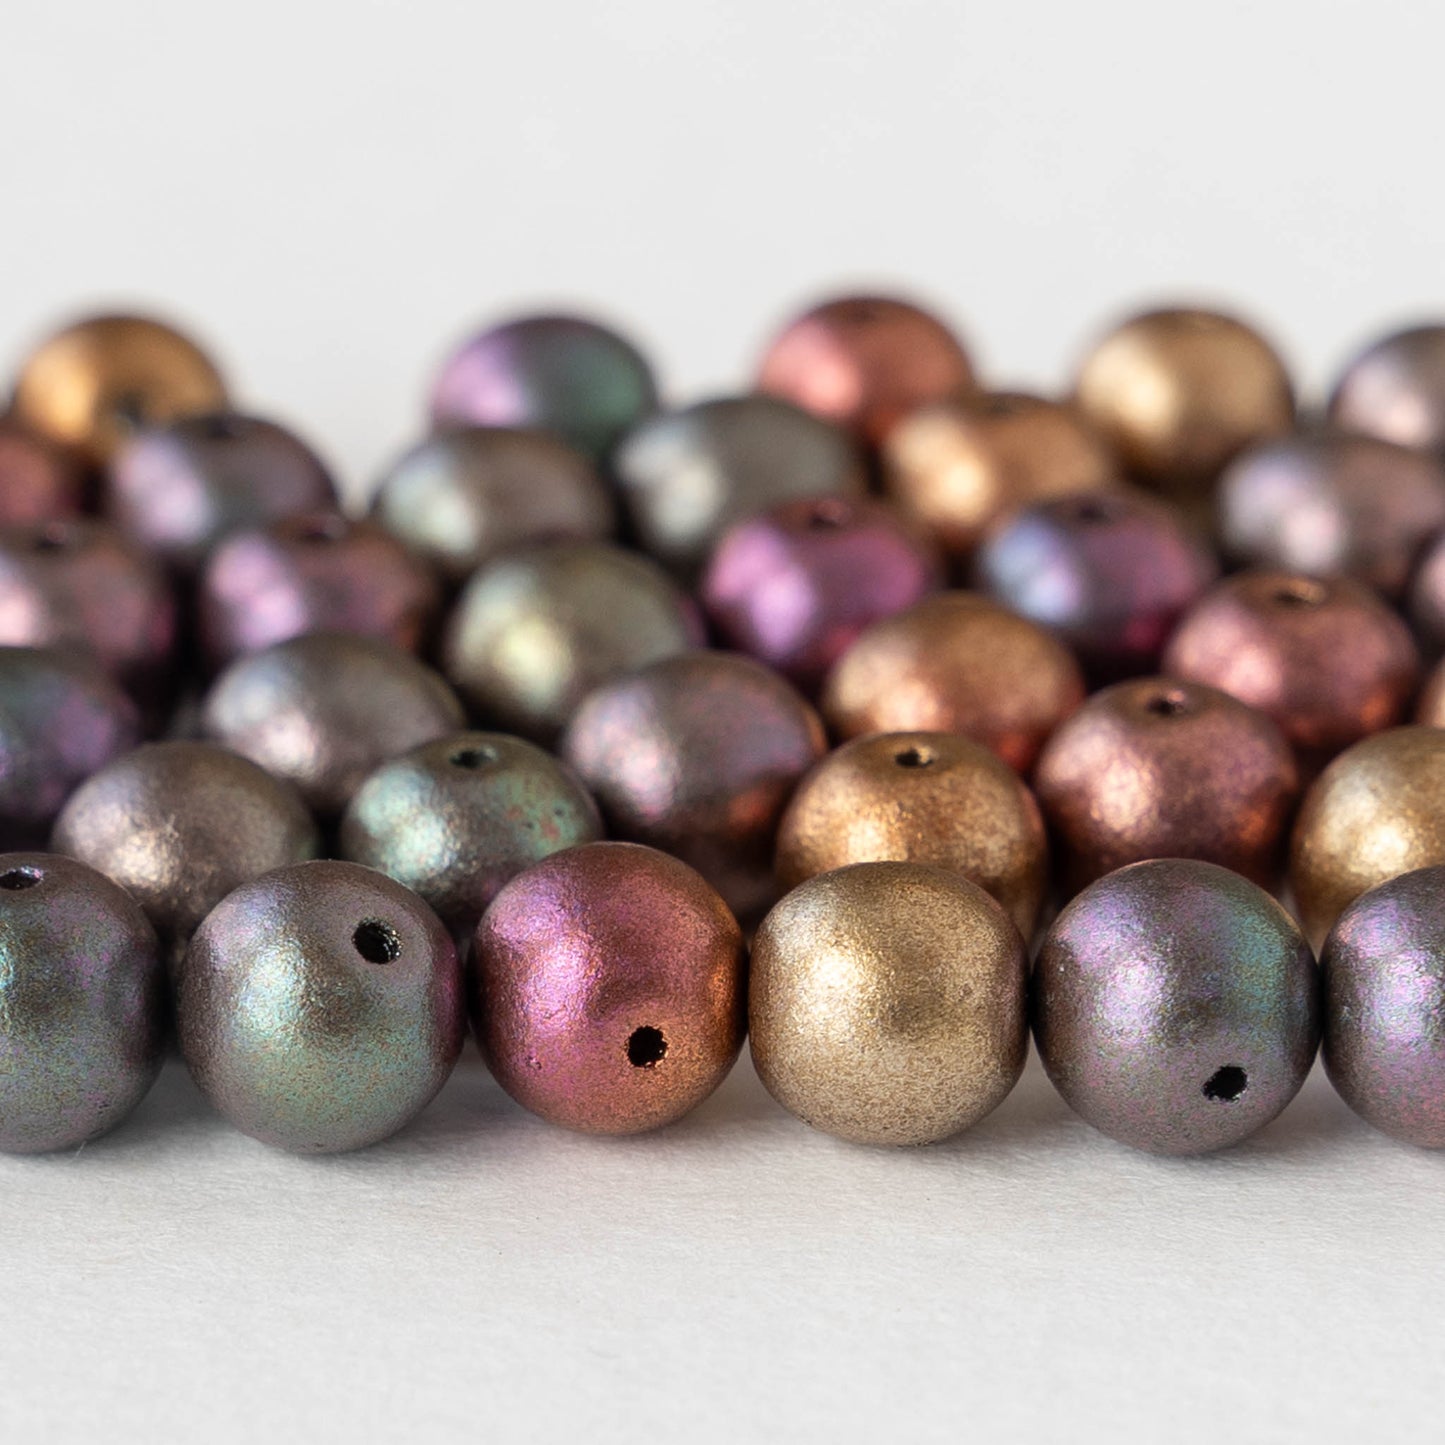 7mm Round Glass Beads - Rainbow Metallic Mix - 50 Beads